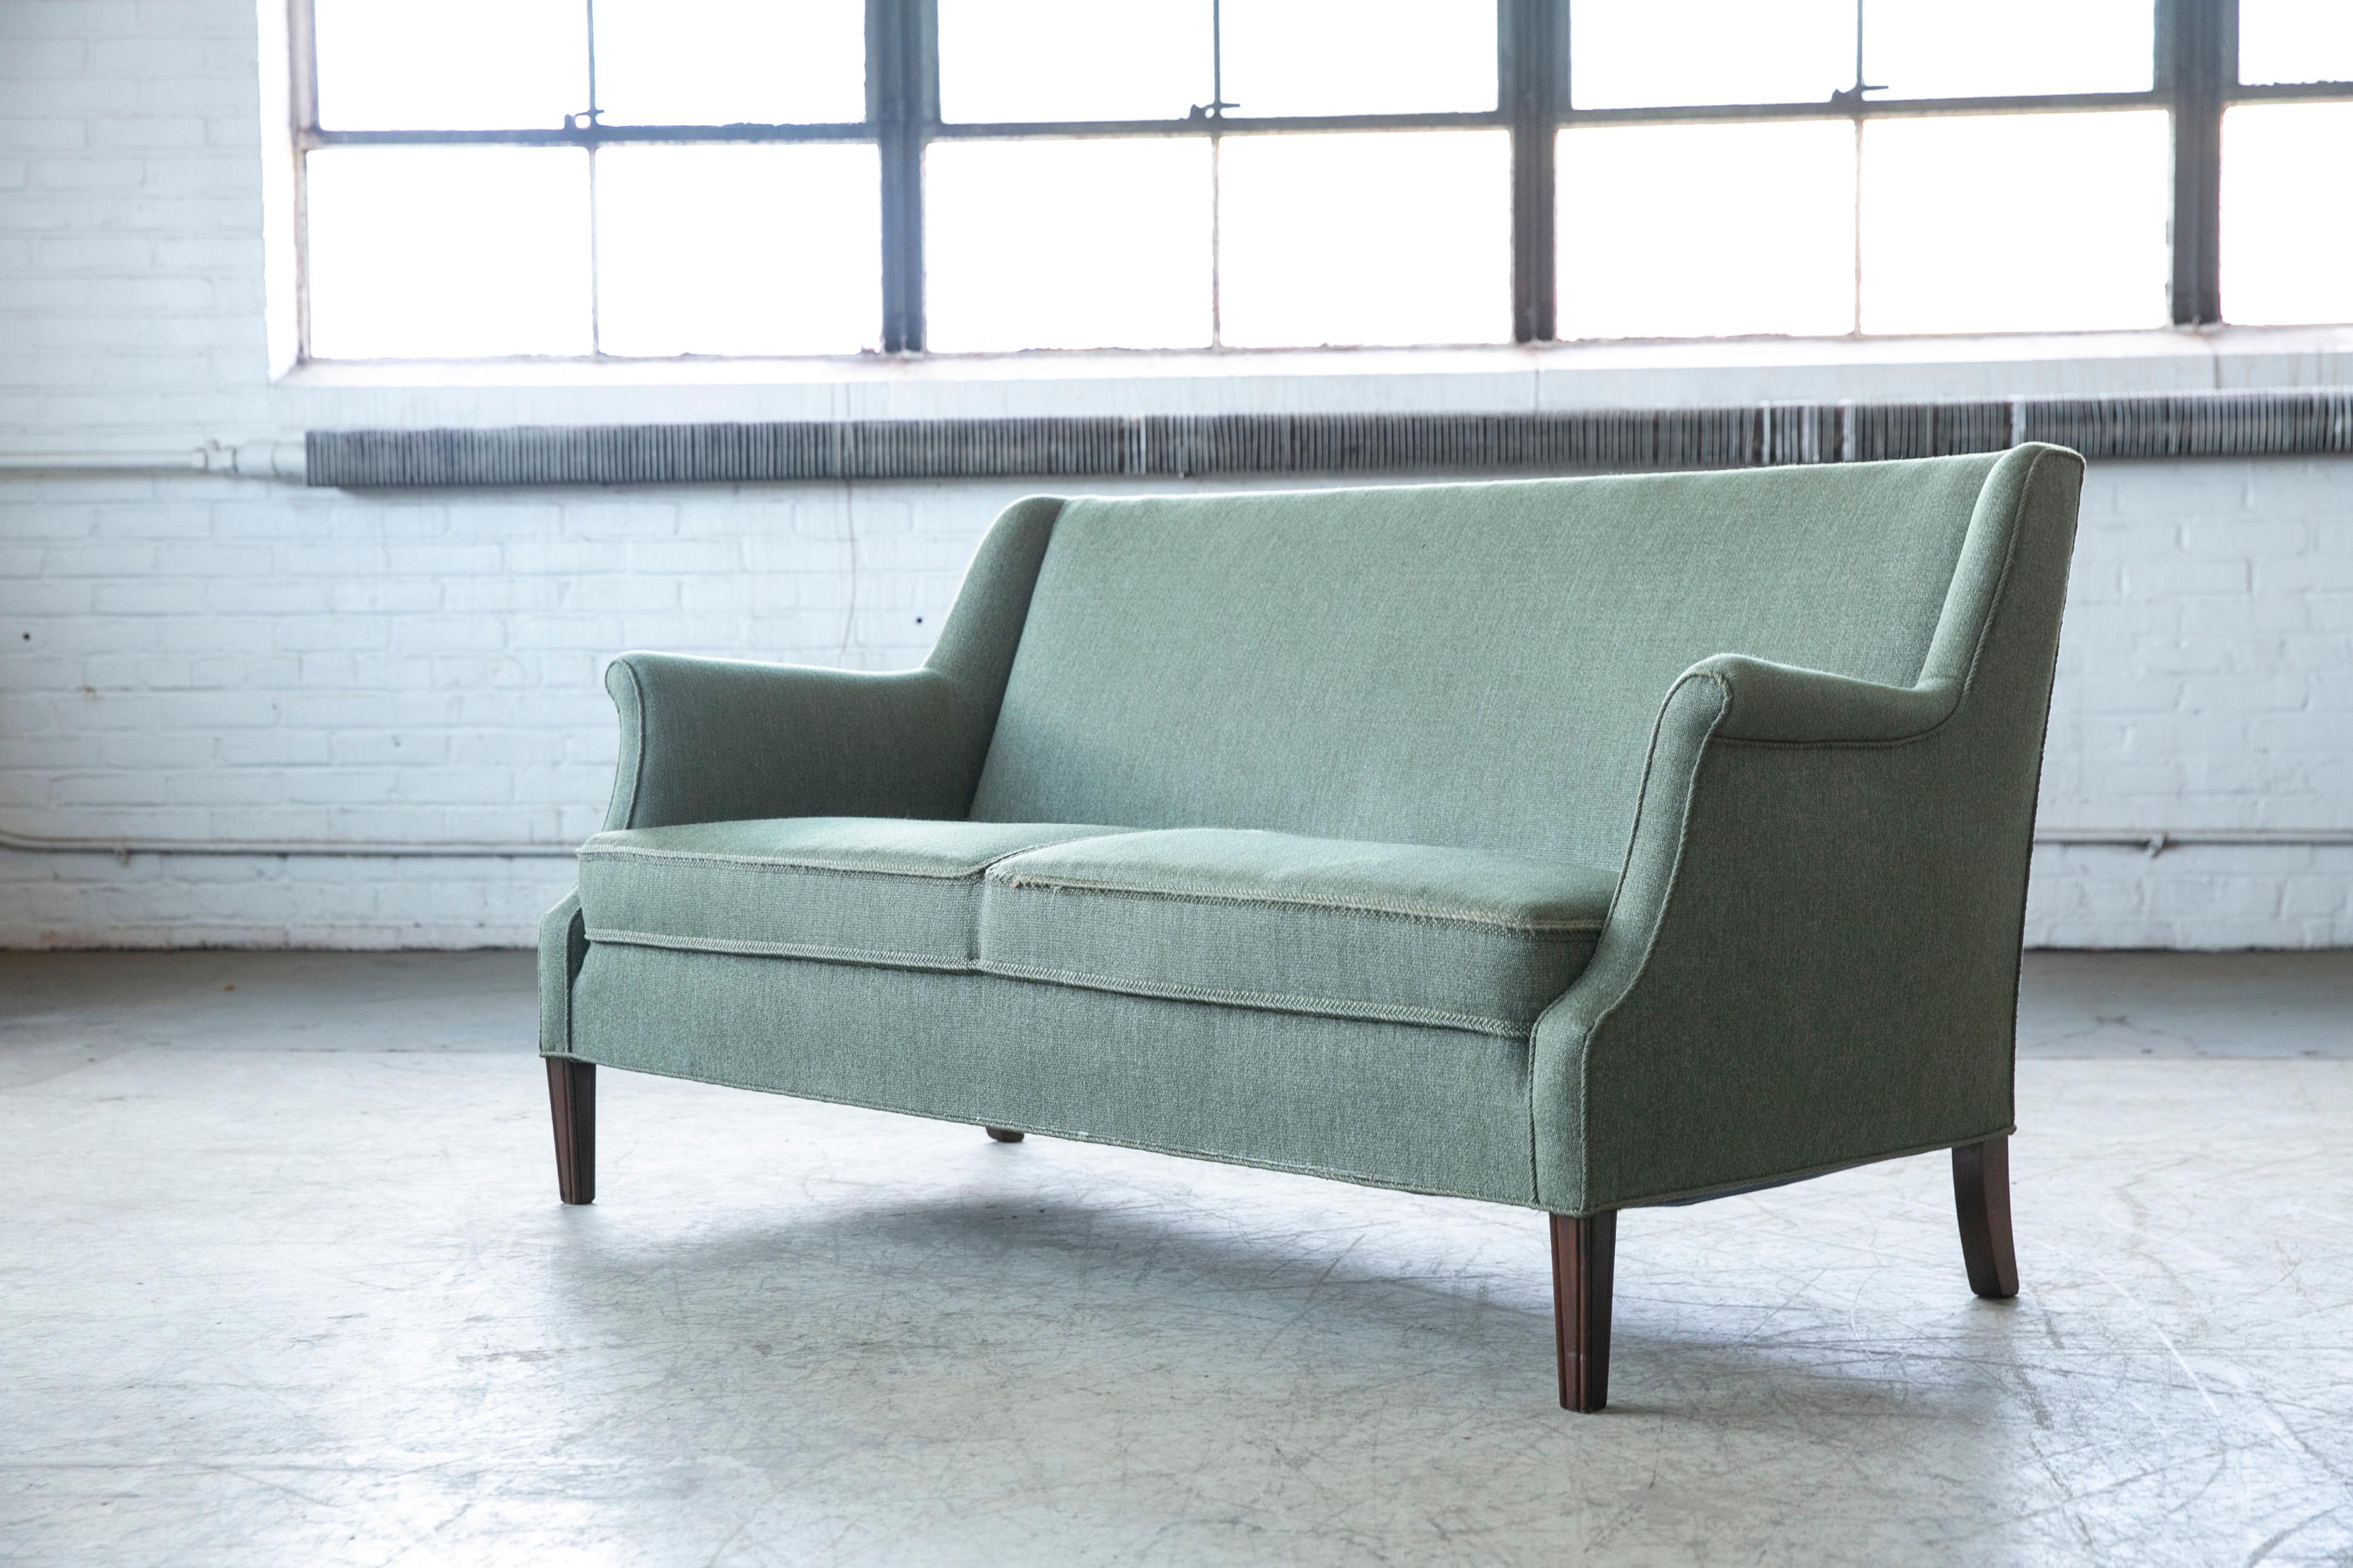 Klassisches dänisches Sofa vom Meister selbst, Frits Henningsen. Sehr elegant und stilvoll, aber dennoch einfach und raffiniert. Bequem und stützend. Solide und robuste Konstruktion.
Später mit Wolle gepolstert und noch in brauchbarem Zustand,